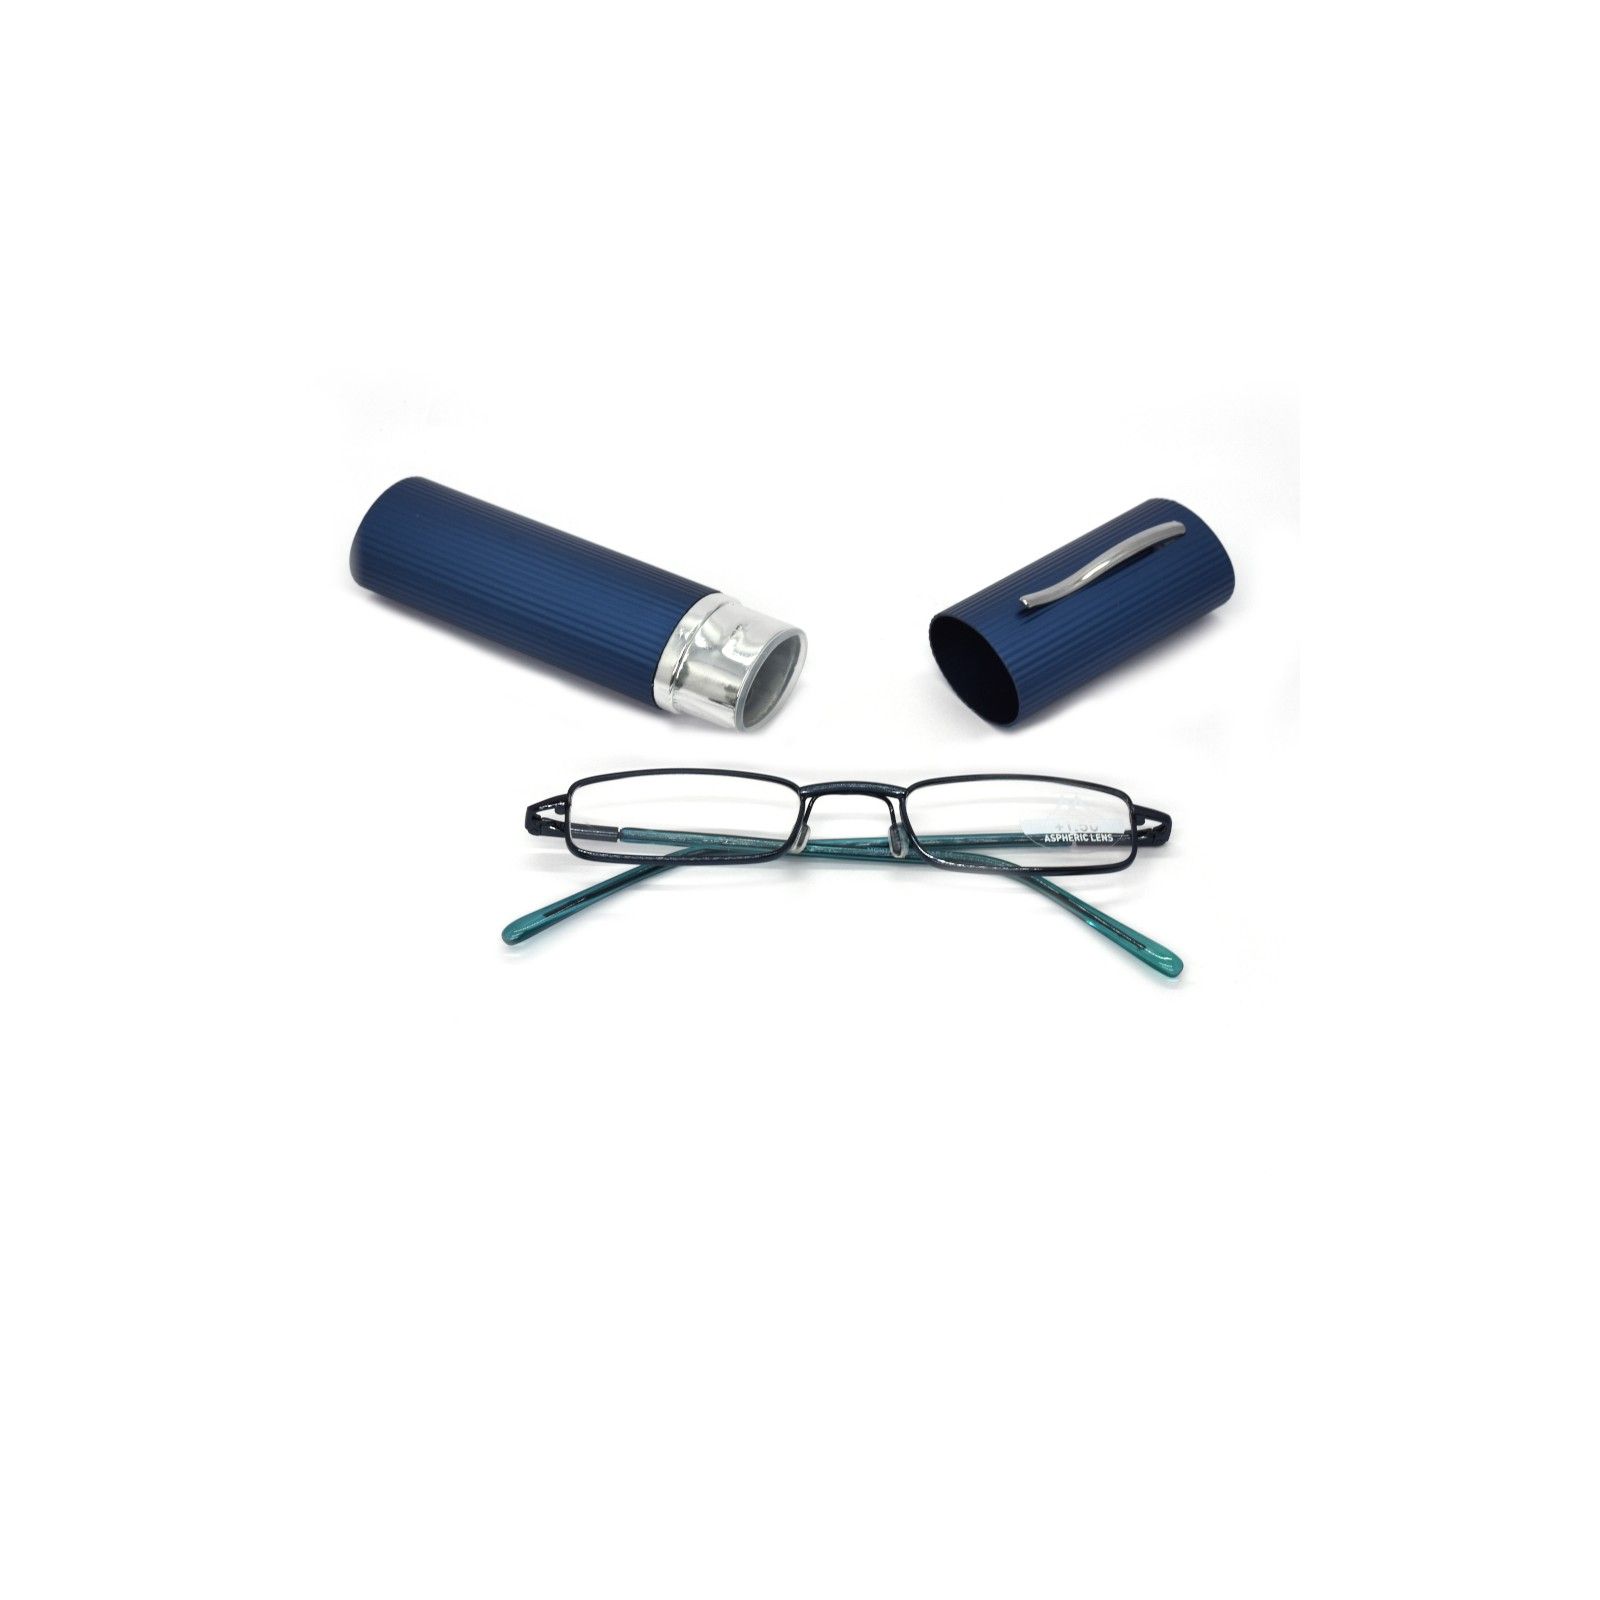 Čítacie modré okuliare +1.00 až +3.50 dioptrie vreckové transportné s kovovým puzdrom - 1